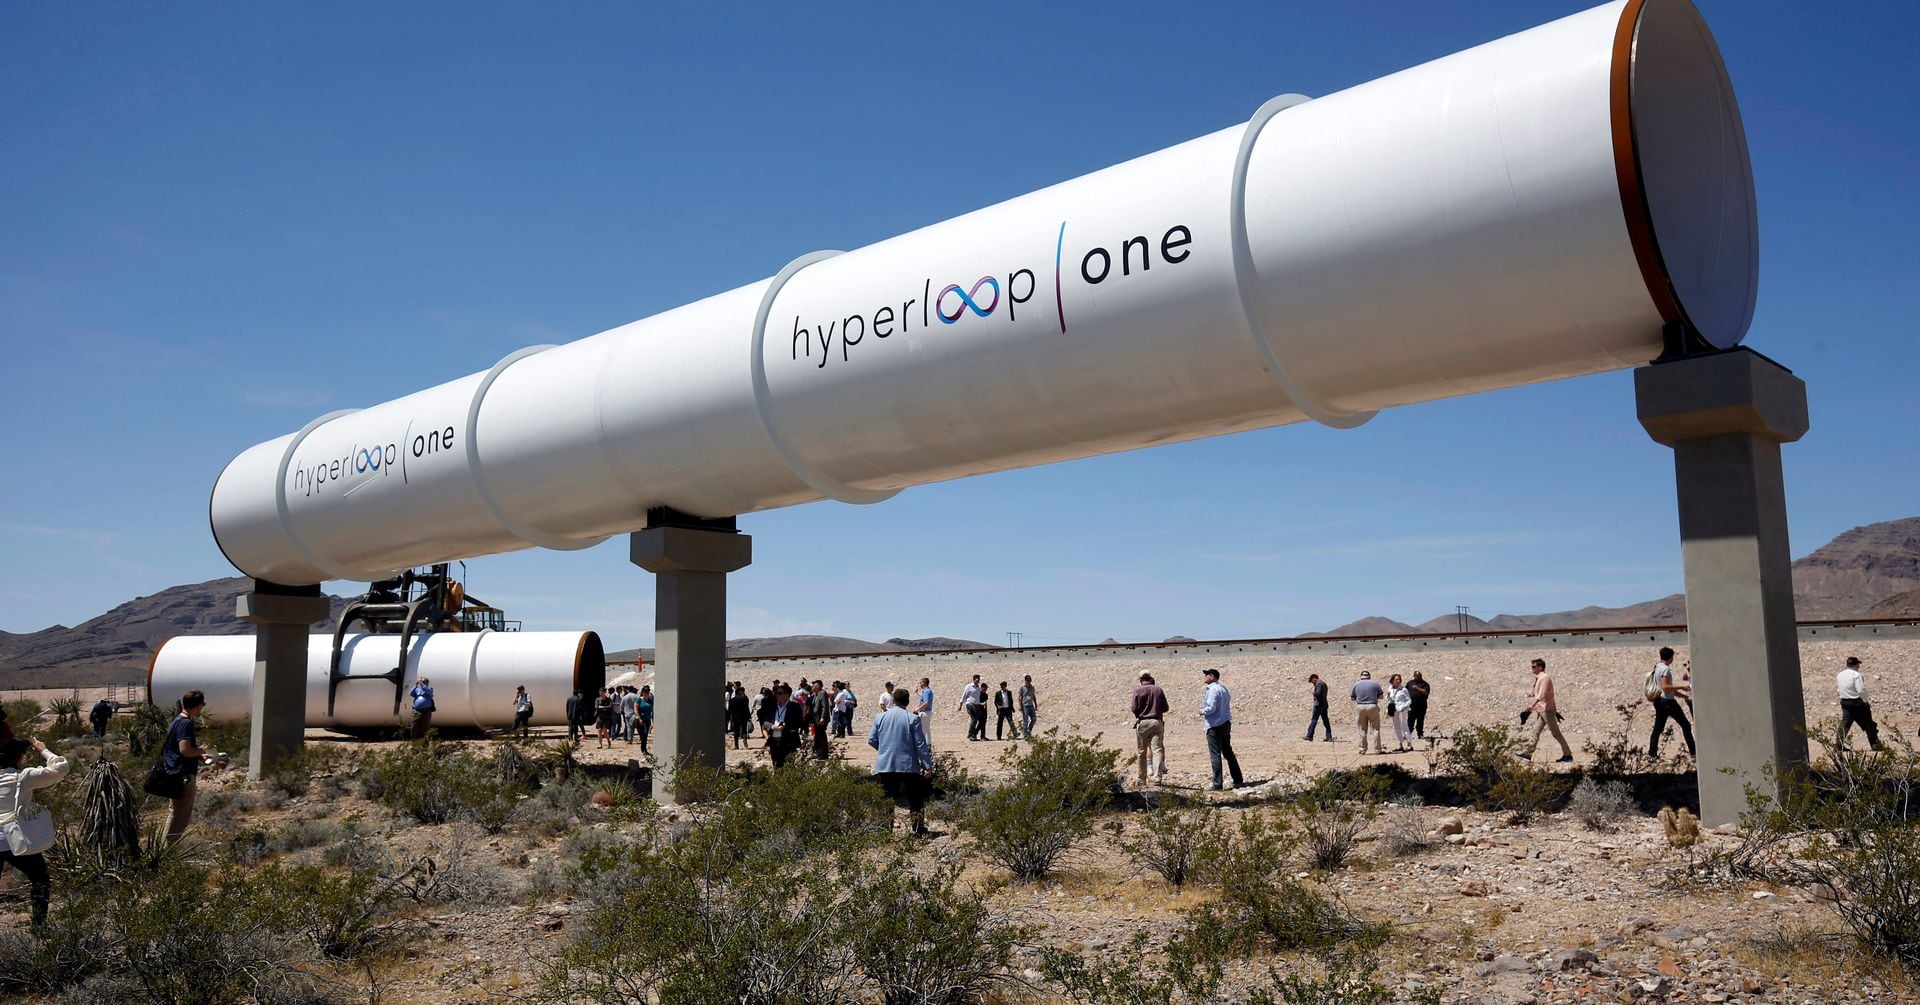 Bloomberg: Hyperloop One, das Unternehmen, das unterirdische Hochgeschwindigkeitsstrecken entwickelt hat, stellt den Betrieb ein